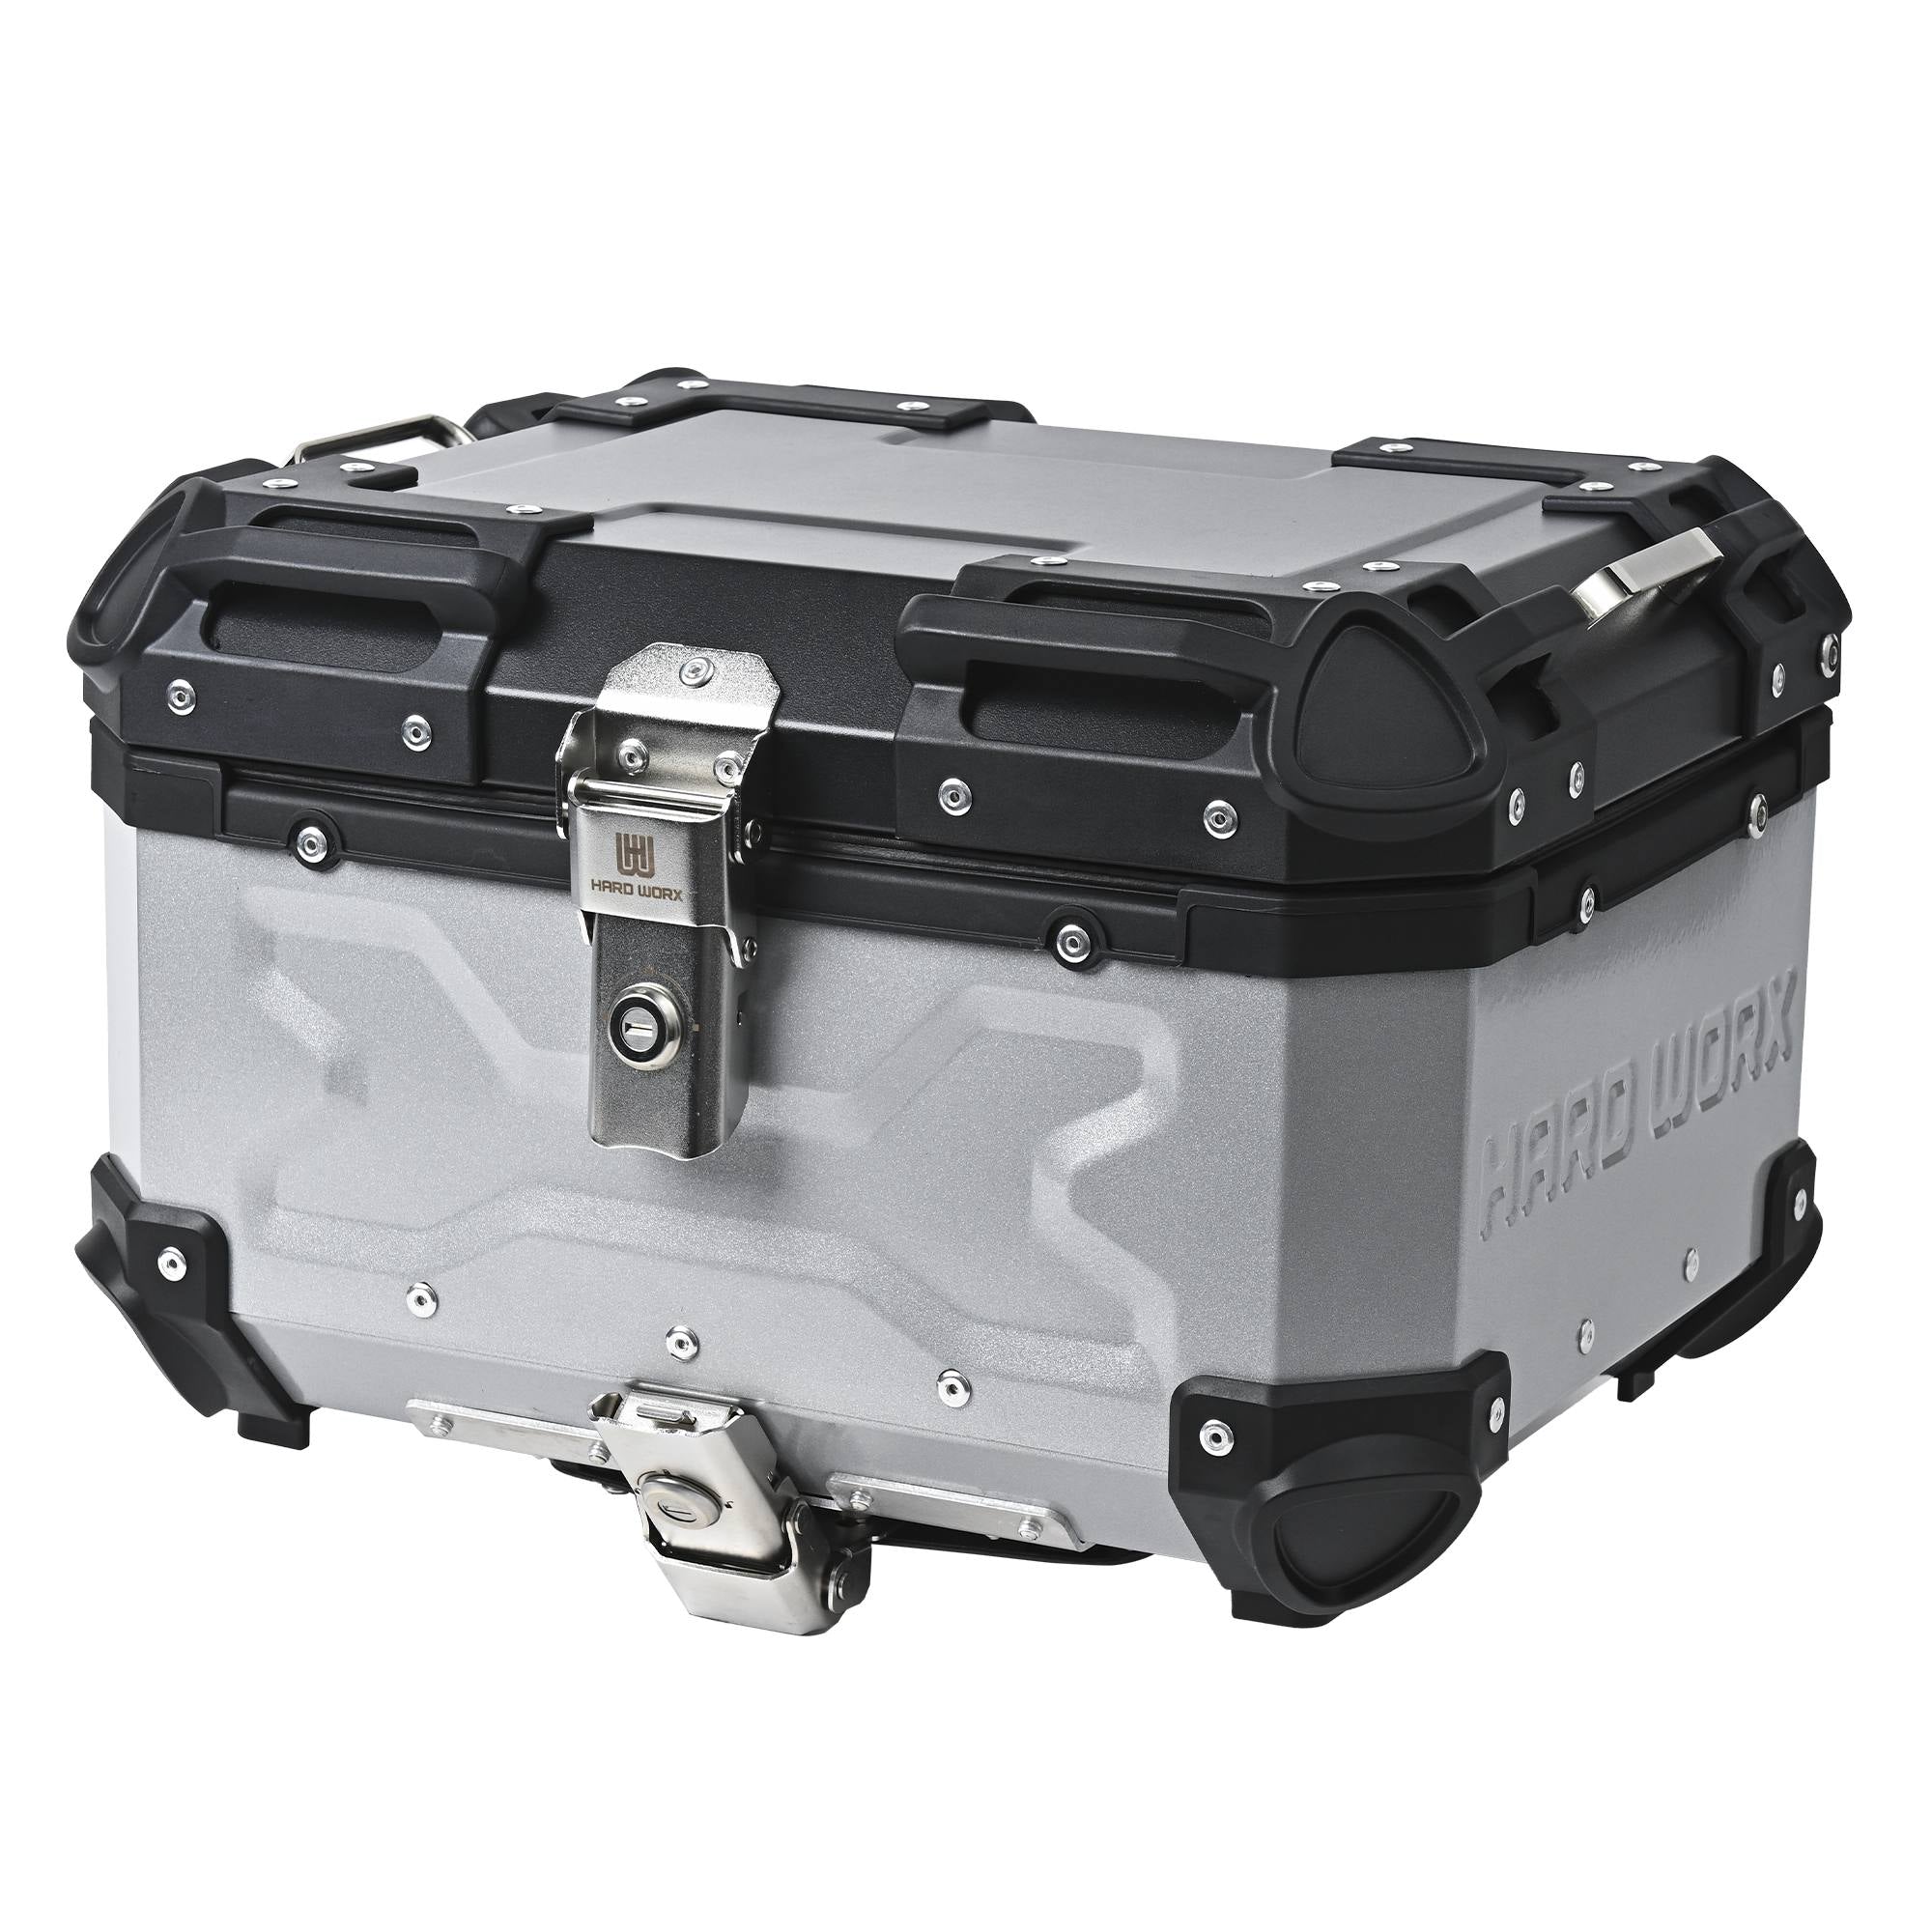 适用于本田 ADV150 的 HARD WORX 保护套和行李架套件 HXNE